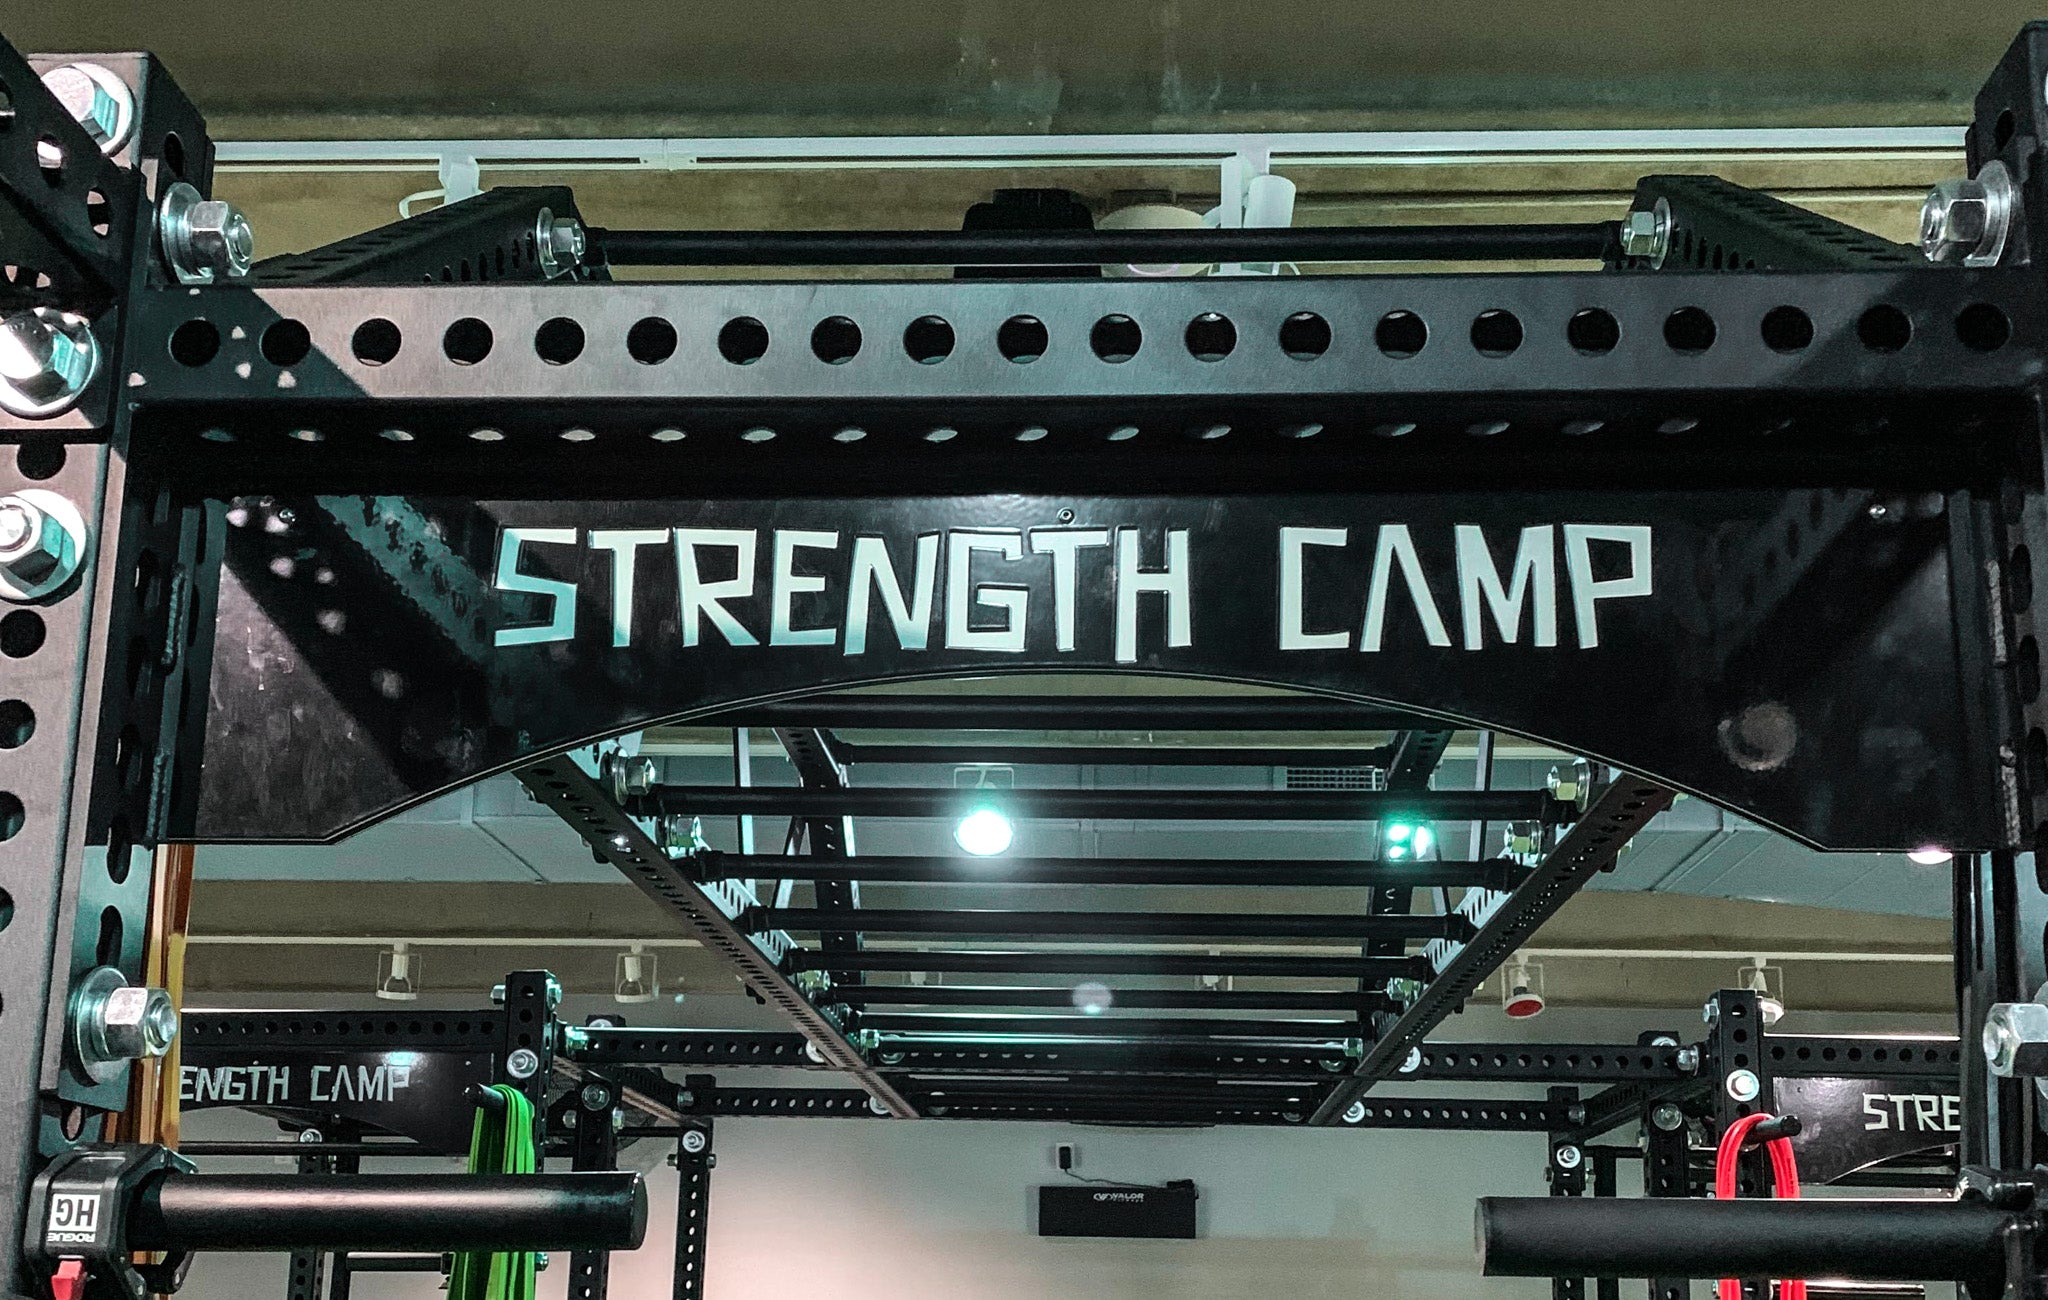 Camp Tampa Strength Camp